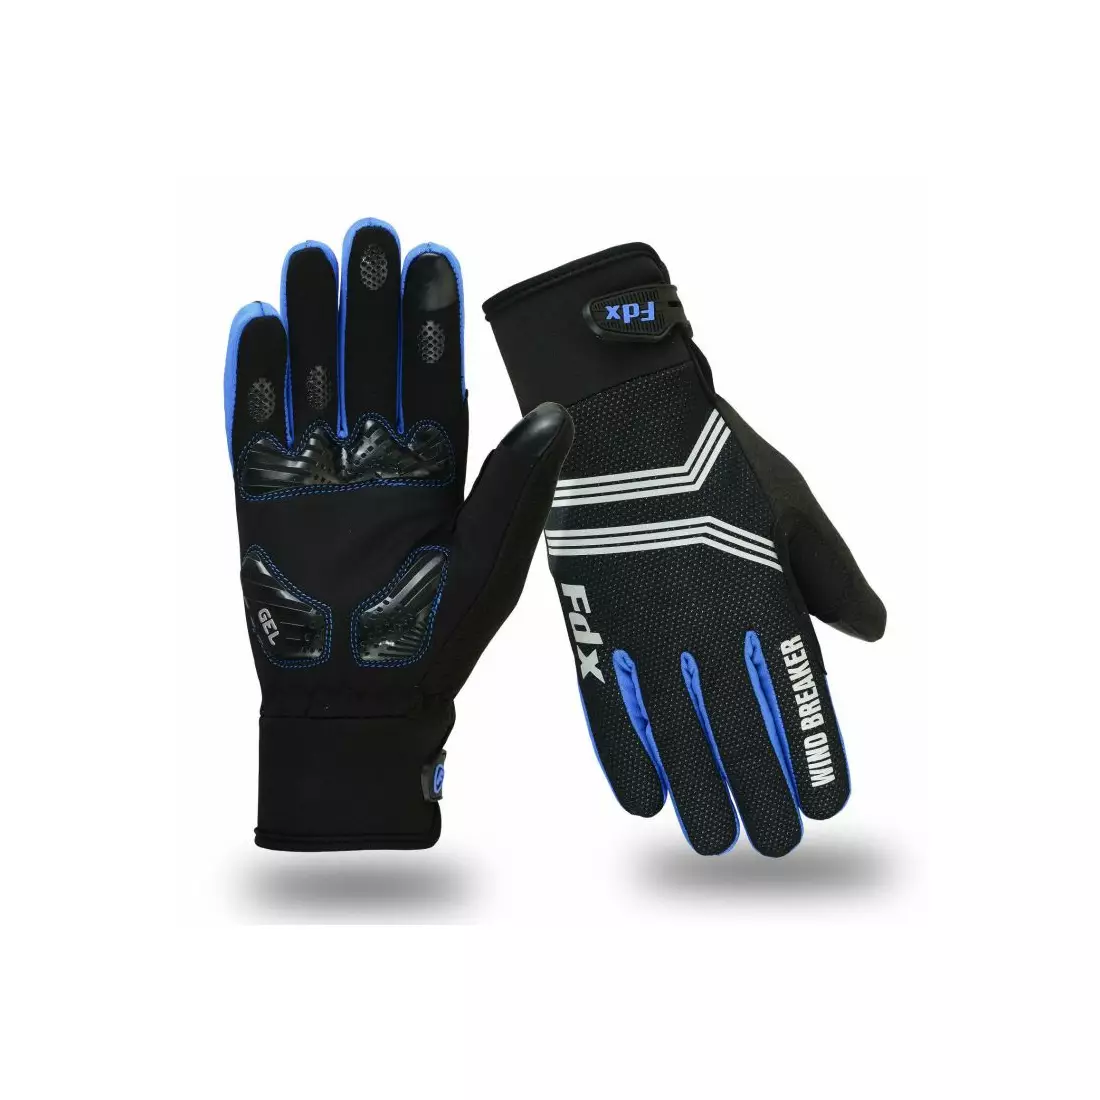 FDX Wind Breaker Gel winter cycling gloves, black and blue